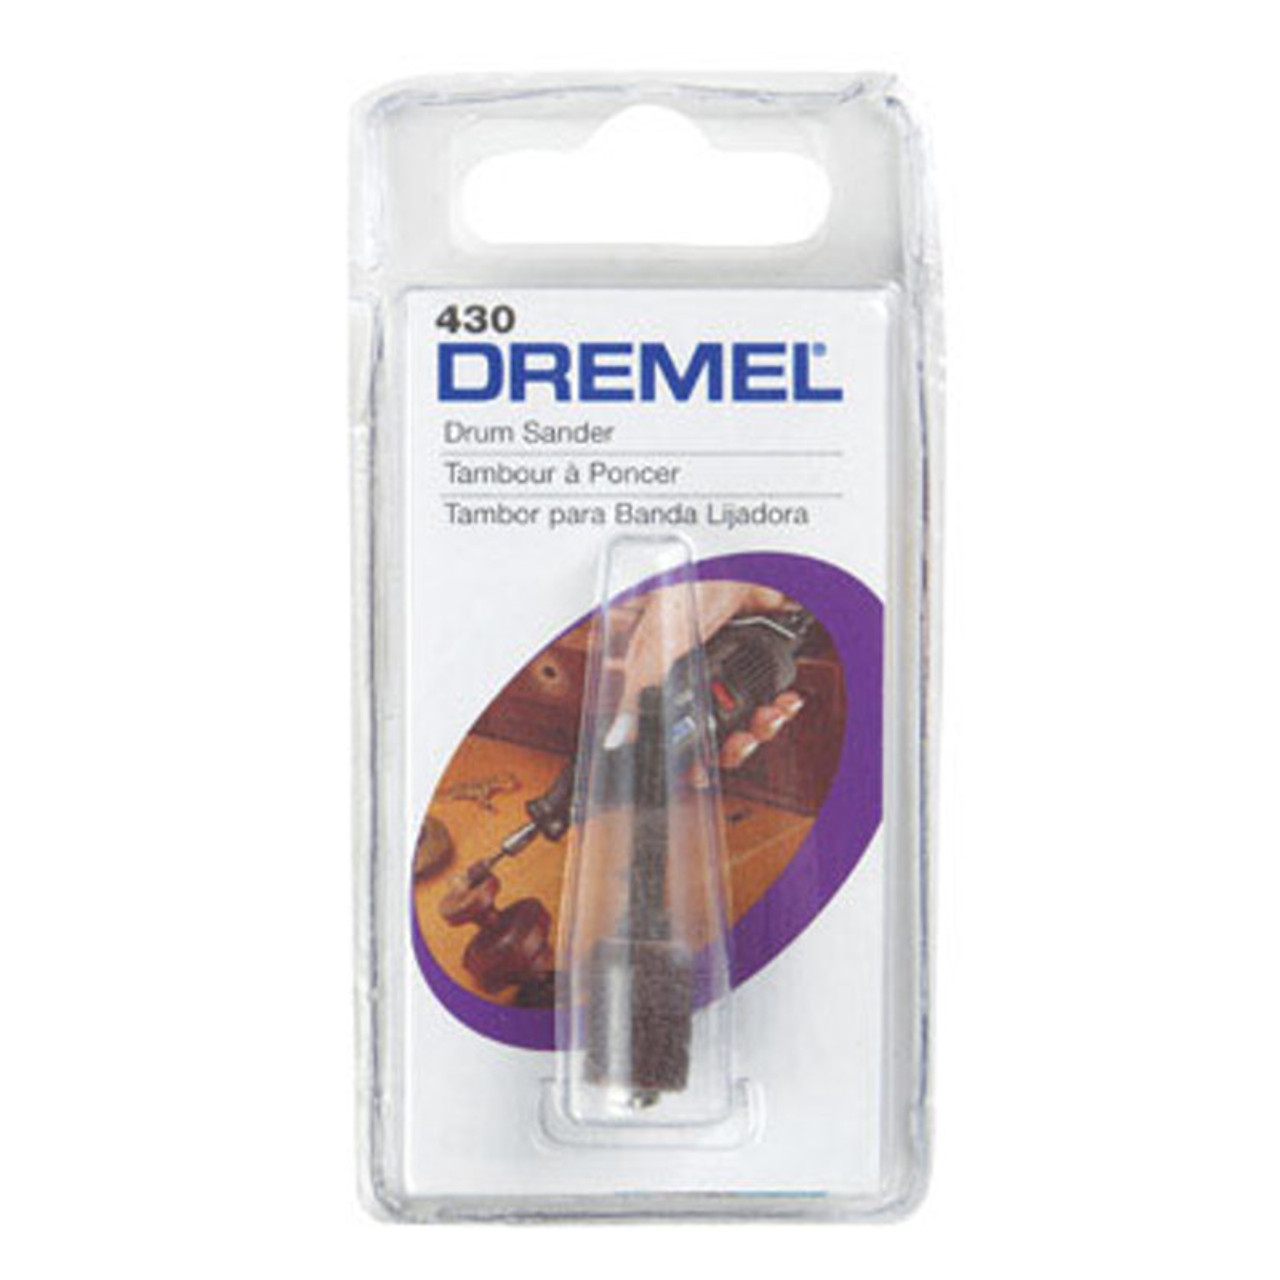 Dremel - 1/4 In. 60 Grit Coarse Sanding Bands